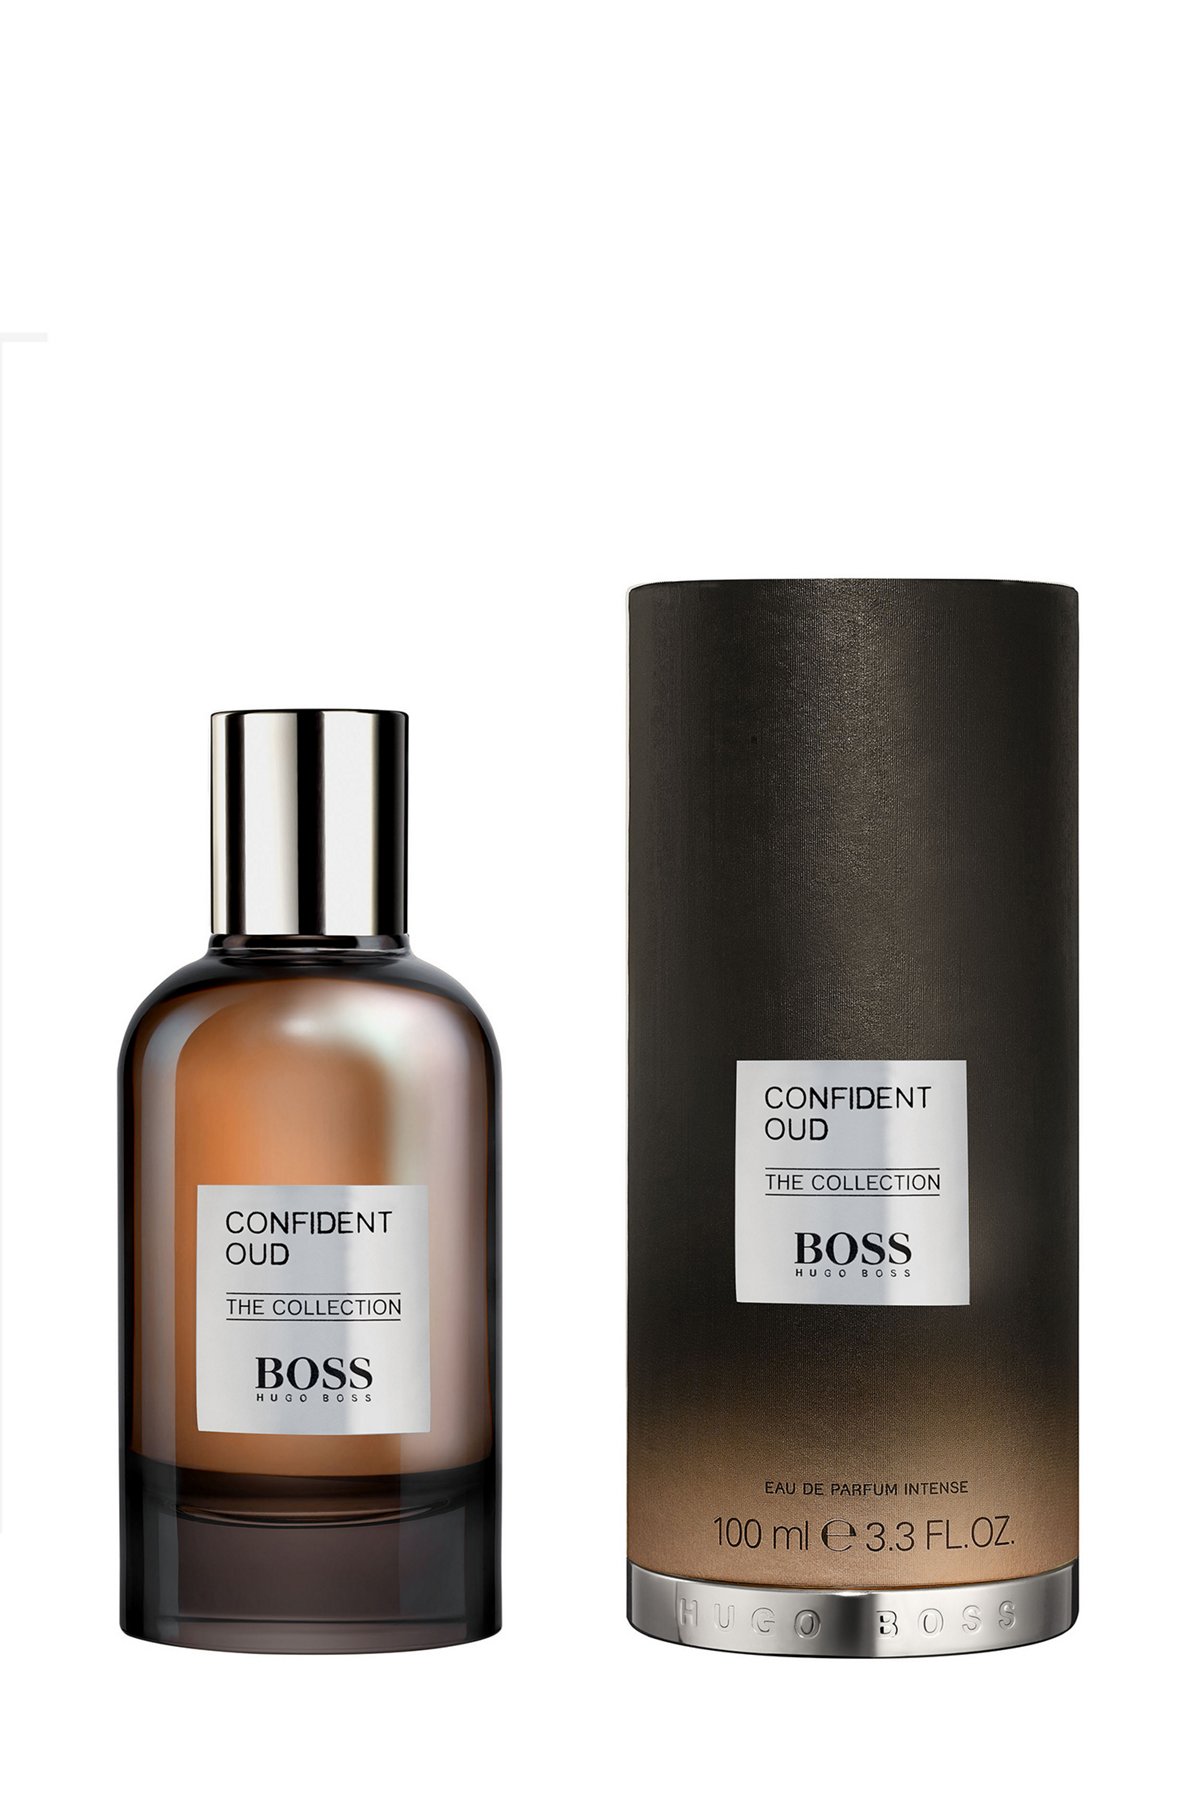 BOSS The Collection Confident Oud Eau de Parfum 100 ml, Assorted-Pre-Pack